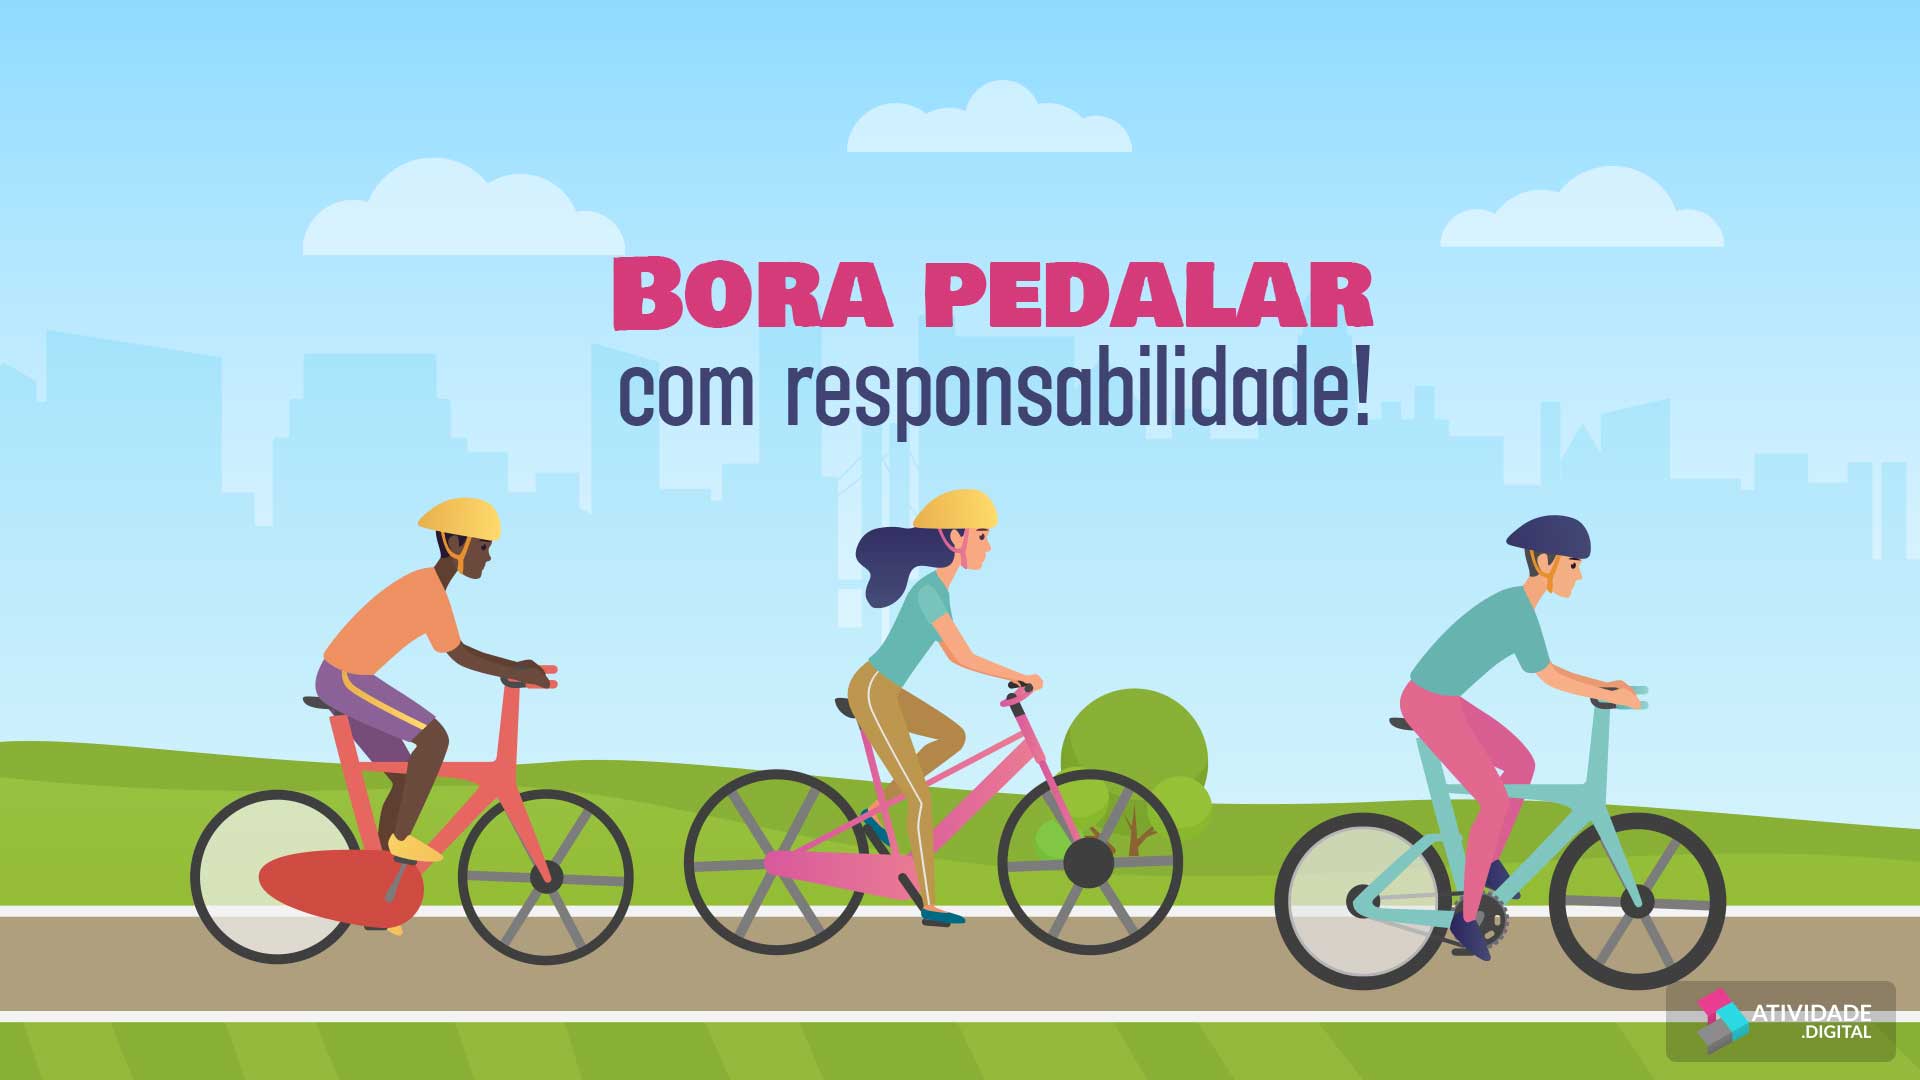 Vamos pedalar com responsabilidade!